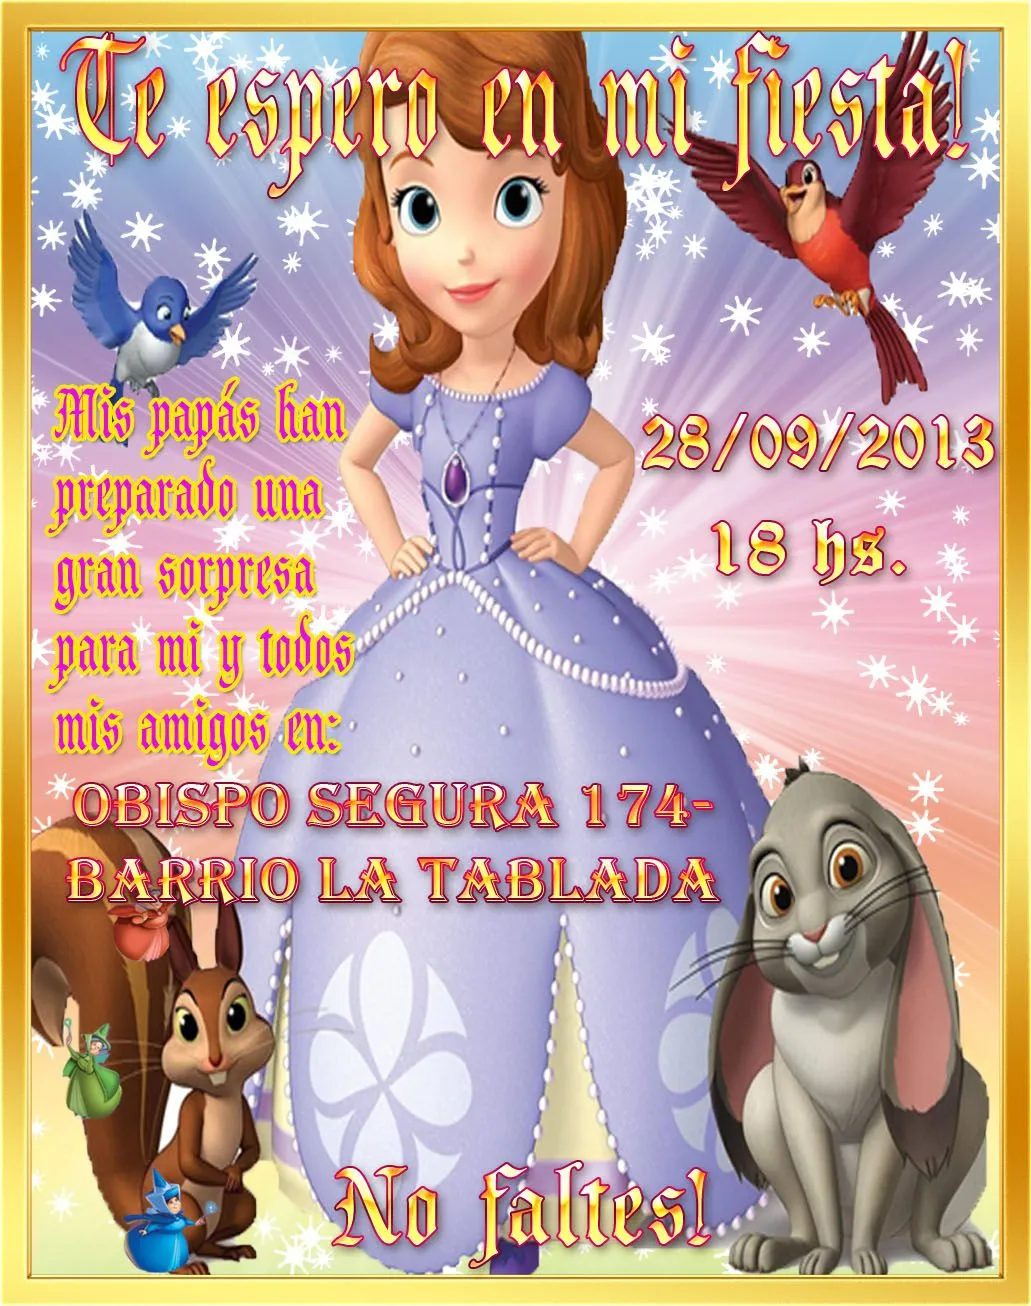 Invitaciónes de cumpleaños de princesita sofia - Imagui